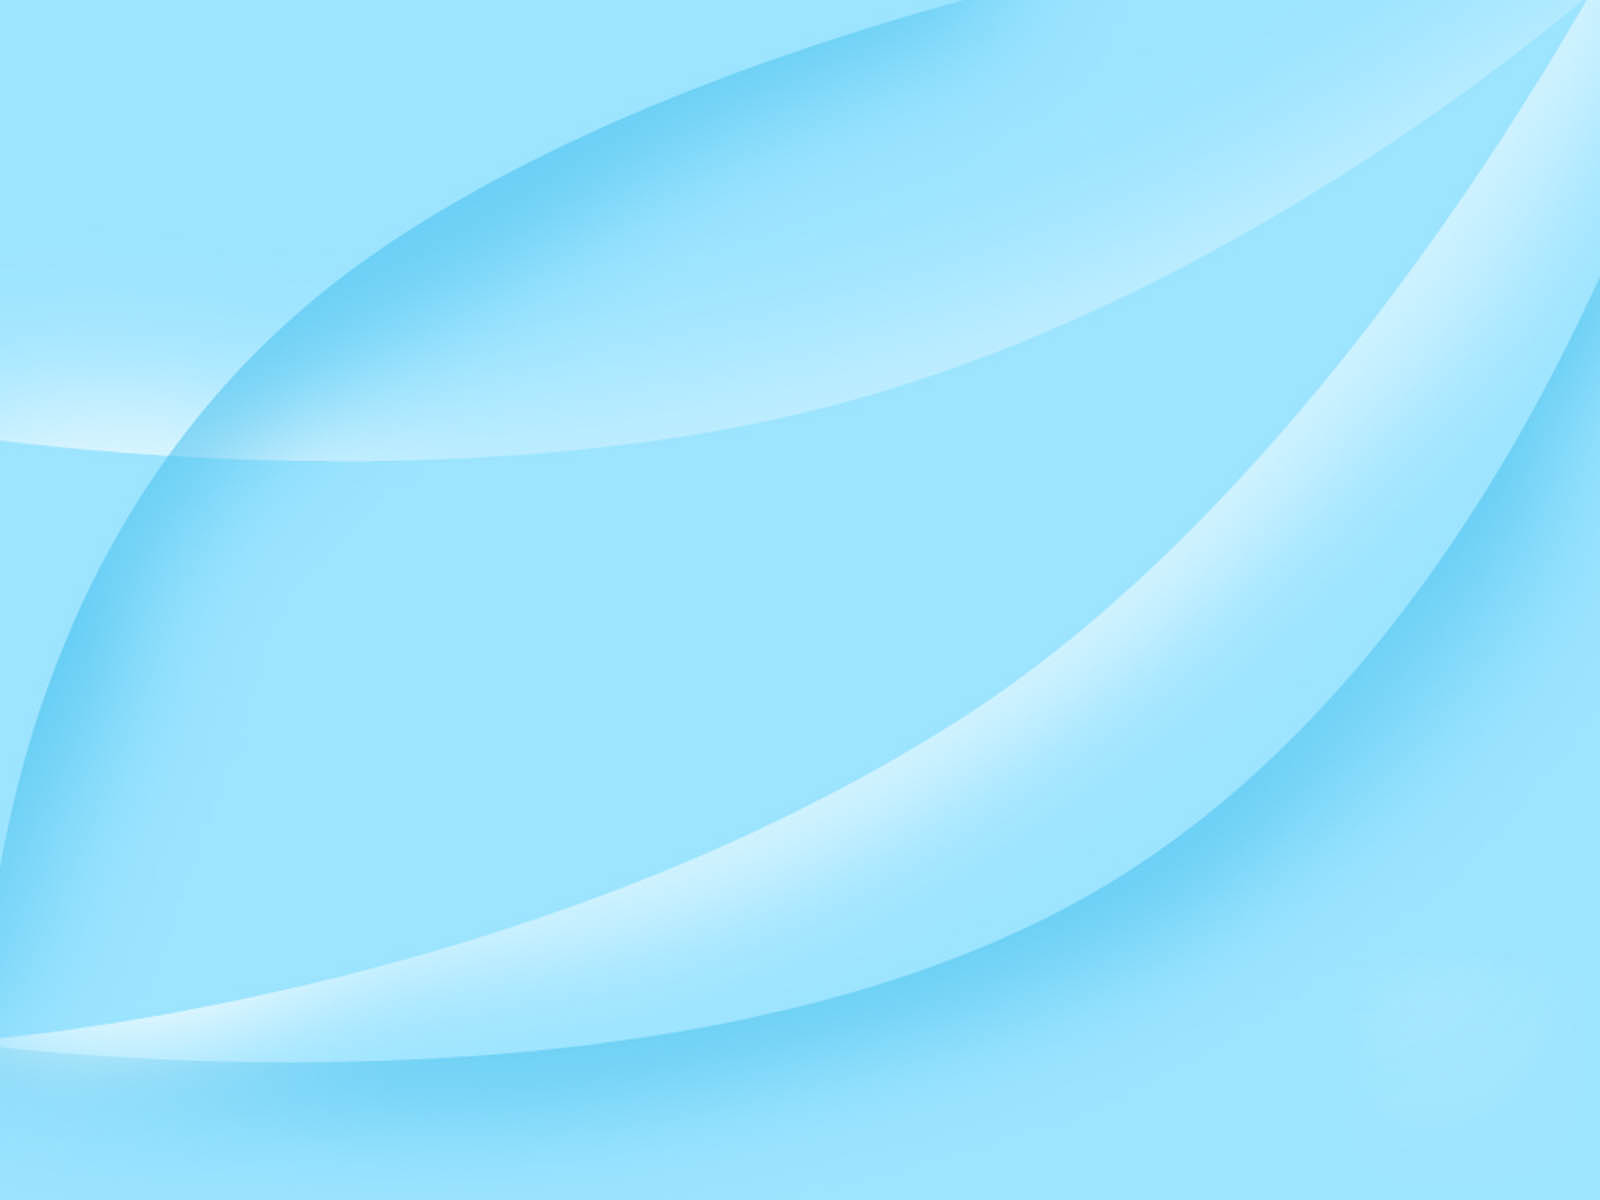 Free Download Aqua Blue Desktop Wallpapers Aqua Blue Desktop